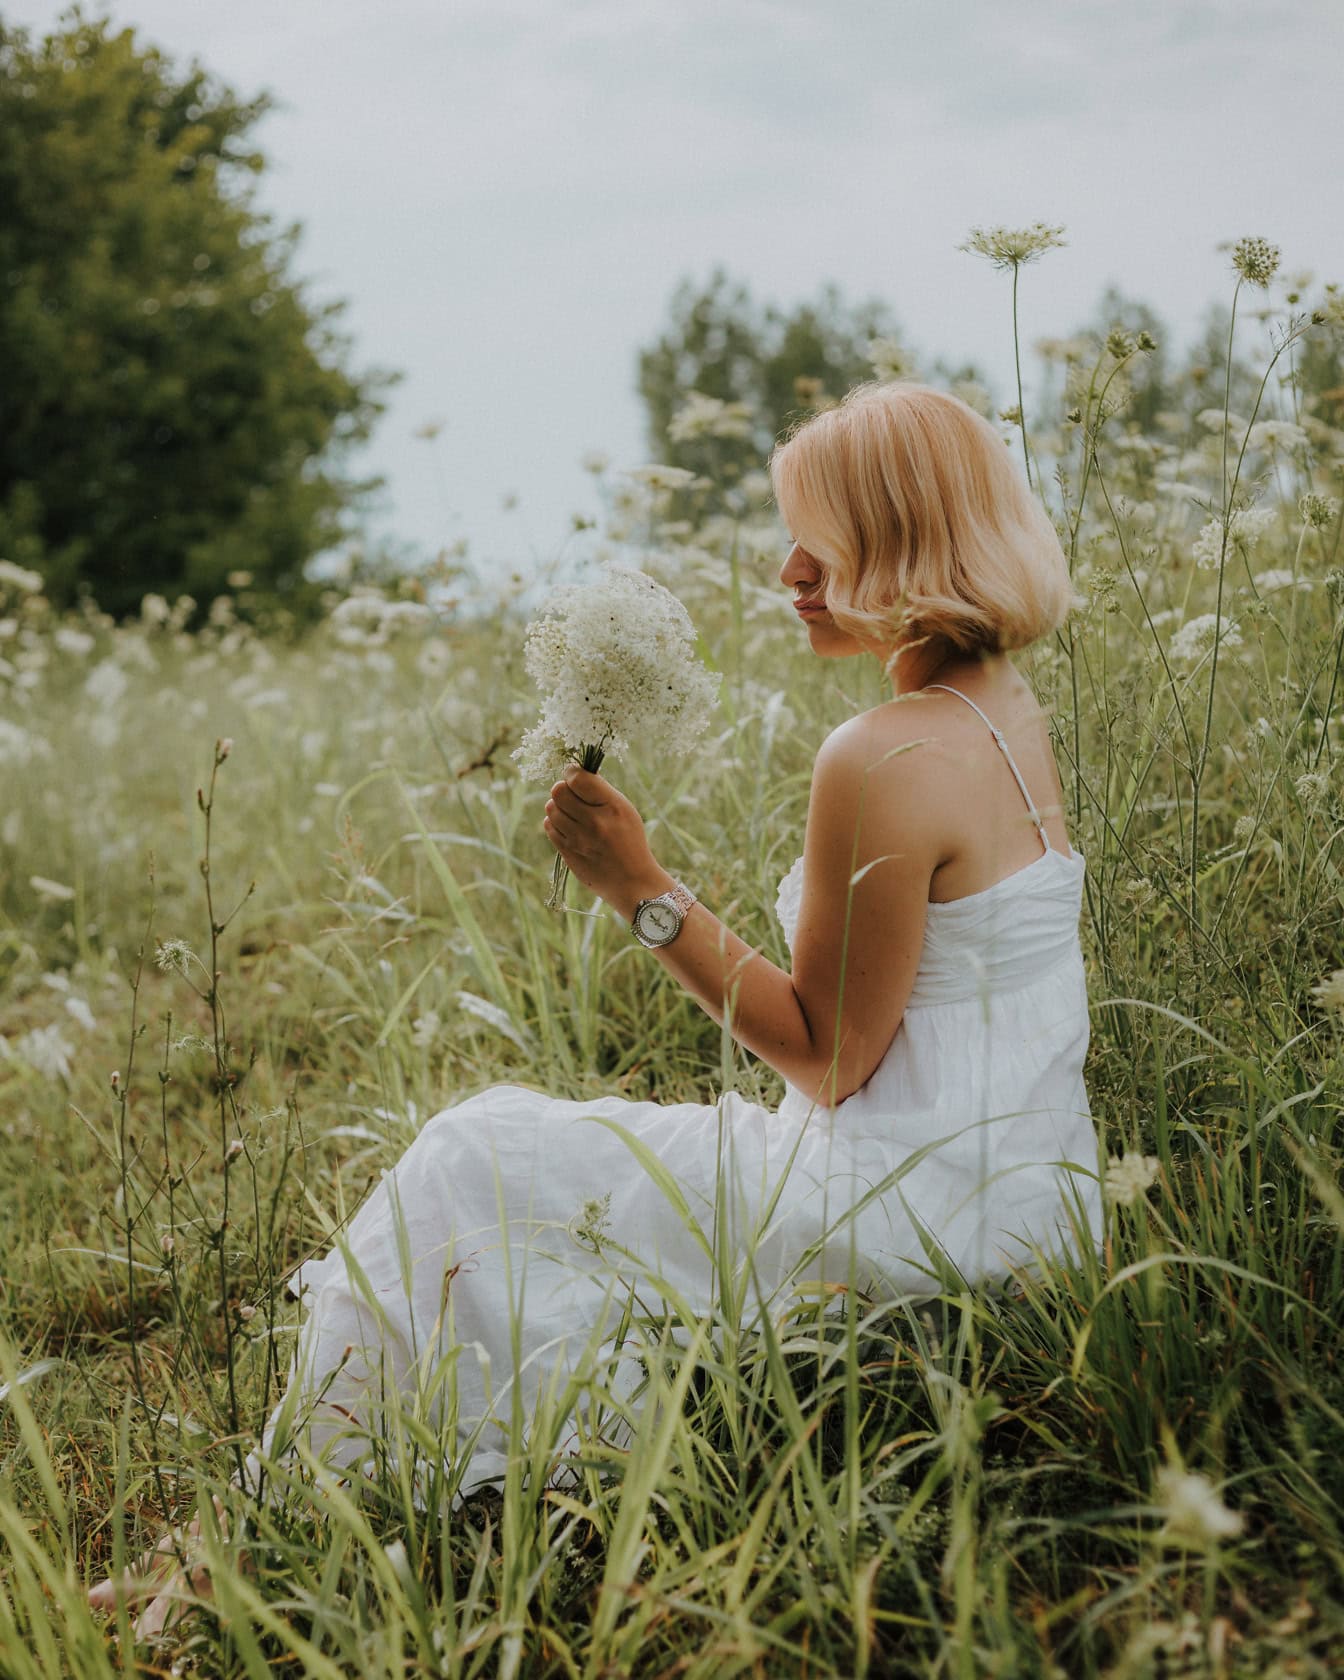 Một cô dâu tóc vàng đẹp trai trong chiếc váy cưới kiểu nông thôn ngồi trên đồng cỏ và hái hoa dại trắng